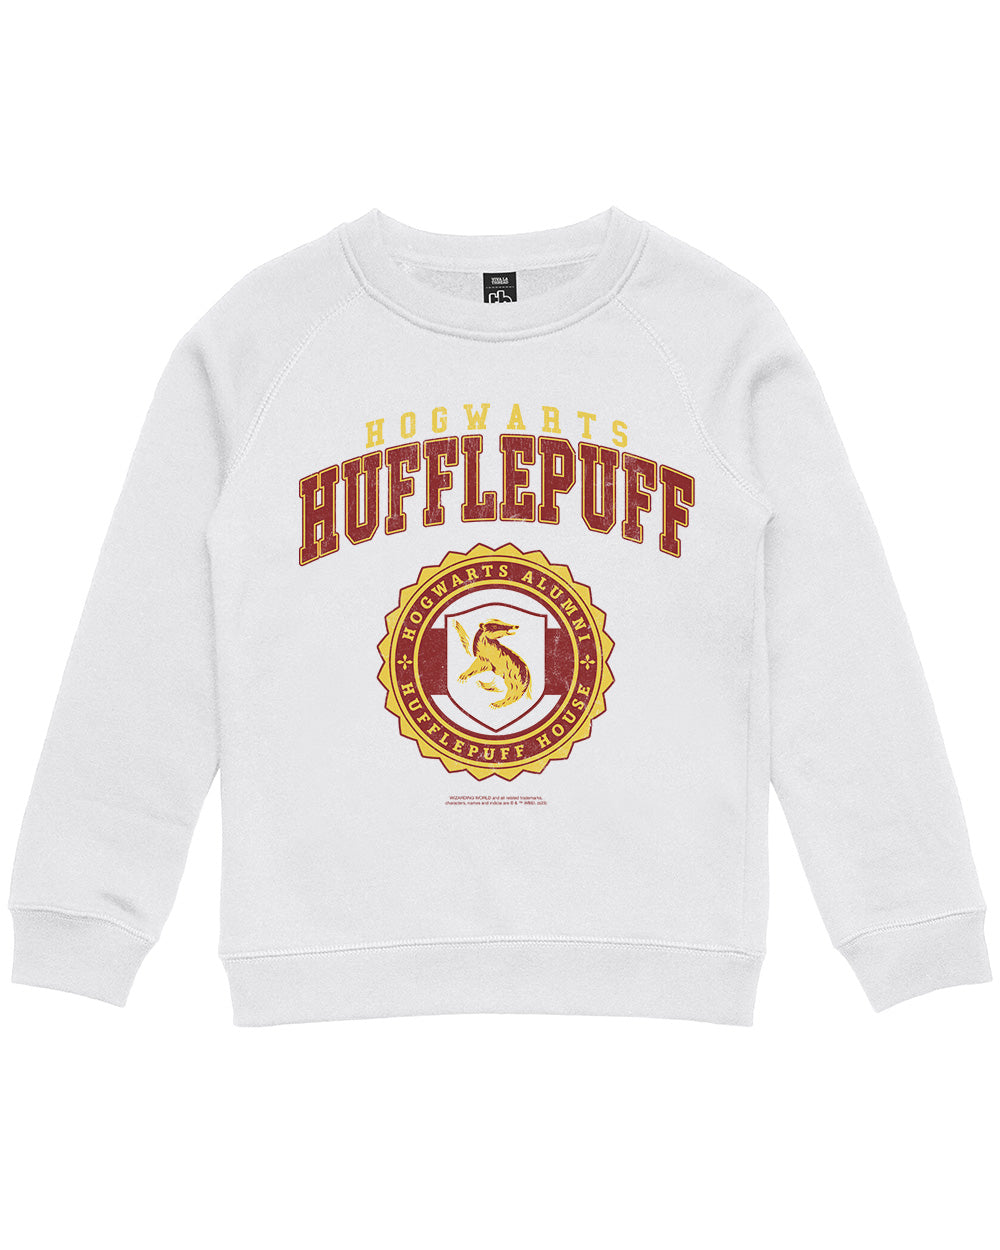 Hufflepuff College Europe Merch | T-Shirt | Harry Threadheads Potter Official